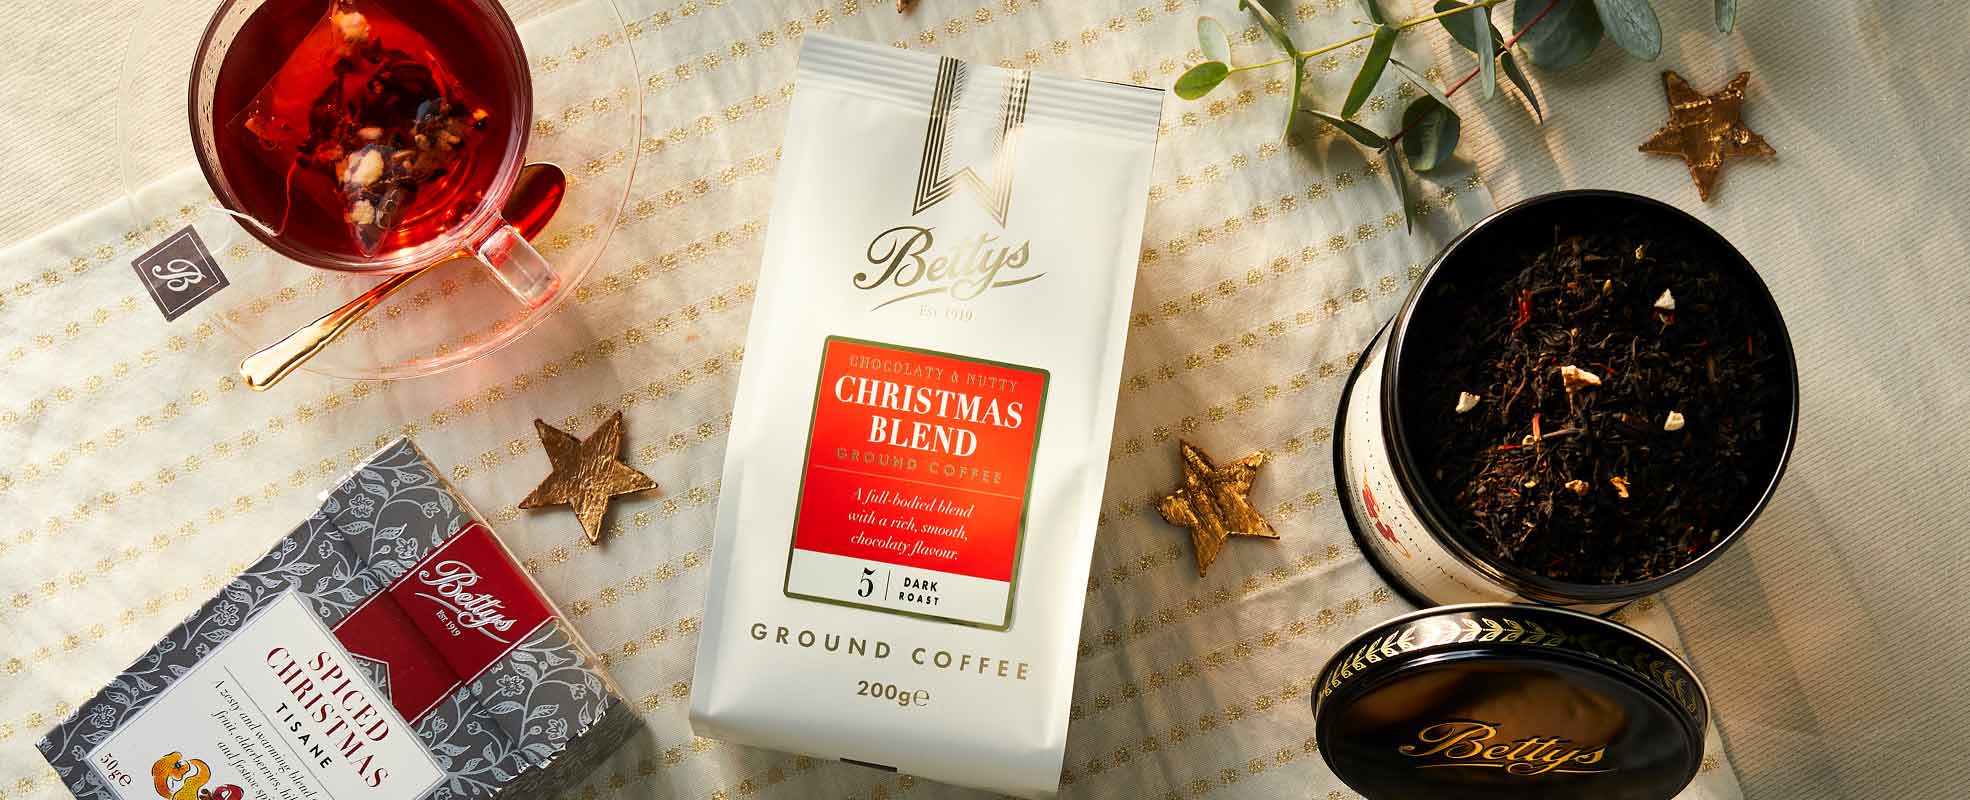 Christmas Tea and Coffee